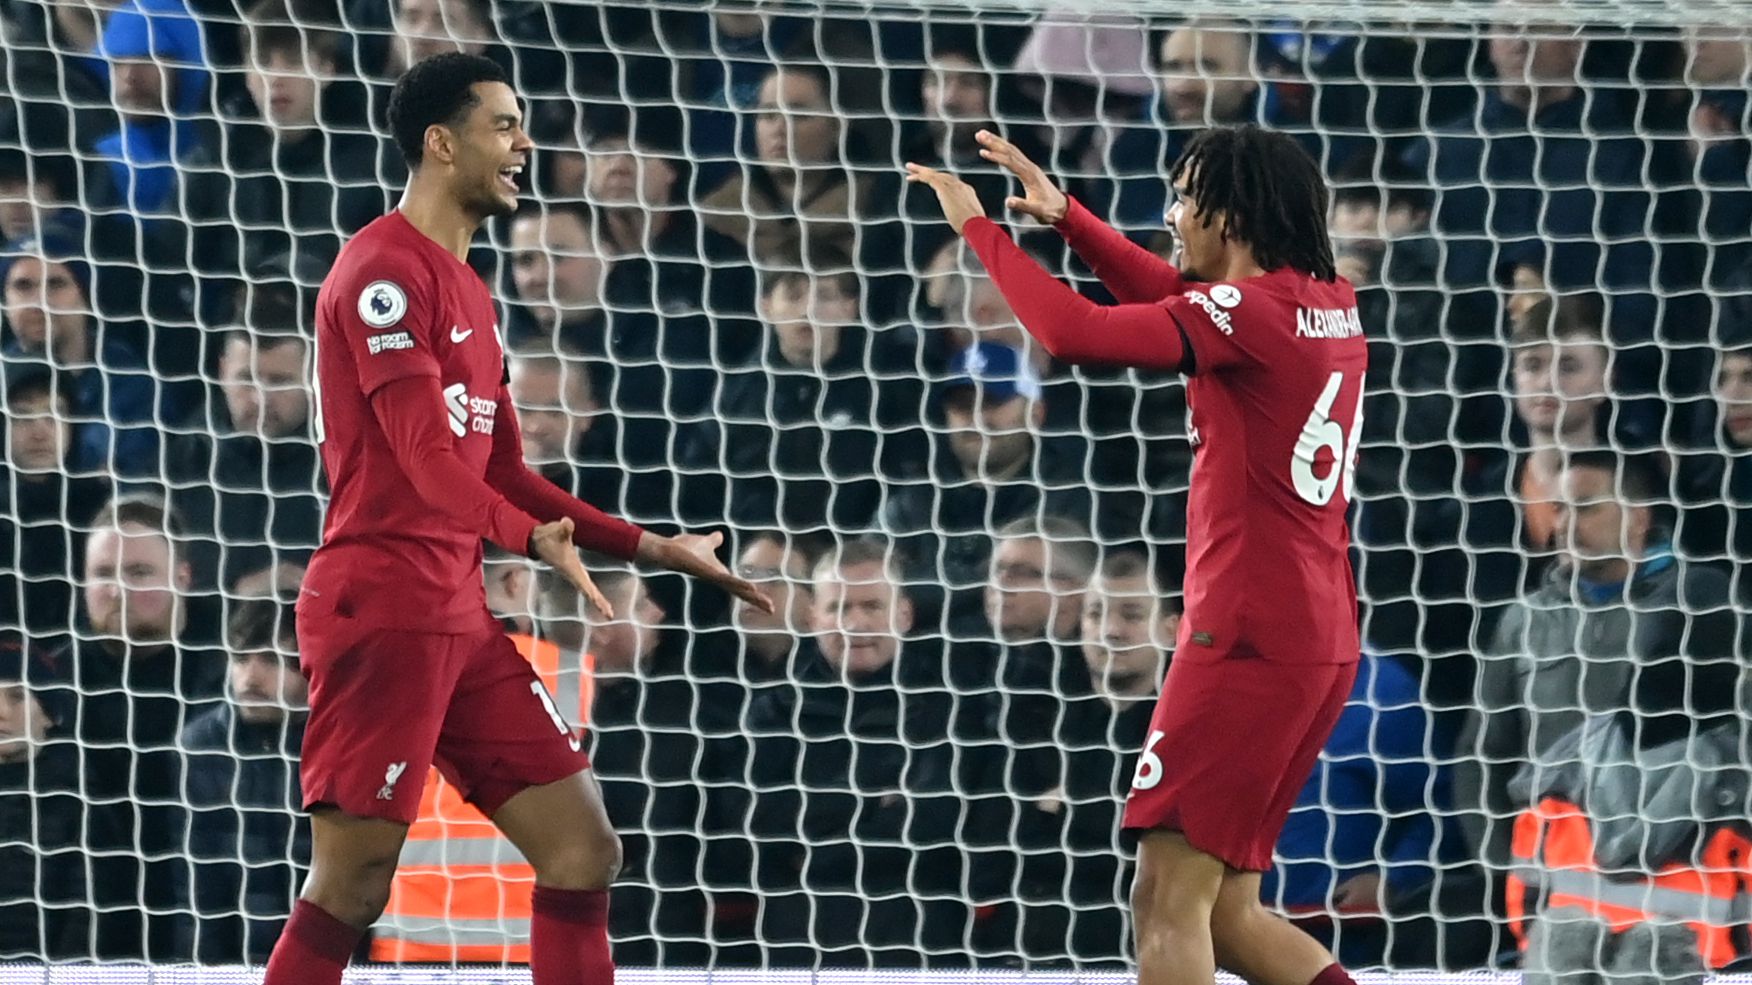 Gakpo comemorando seu primeiro gol com a camisa do Liverpool (Crédito: Getty Images)